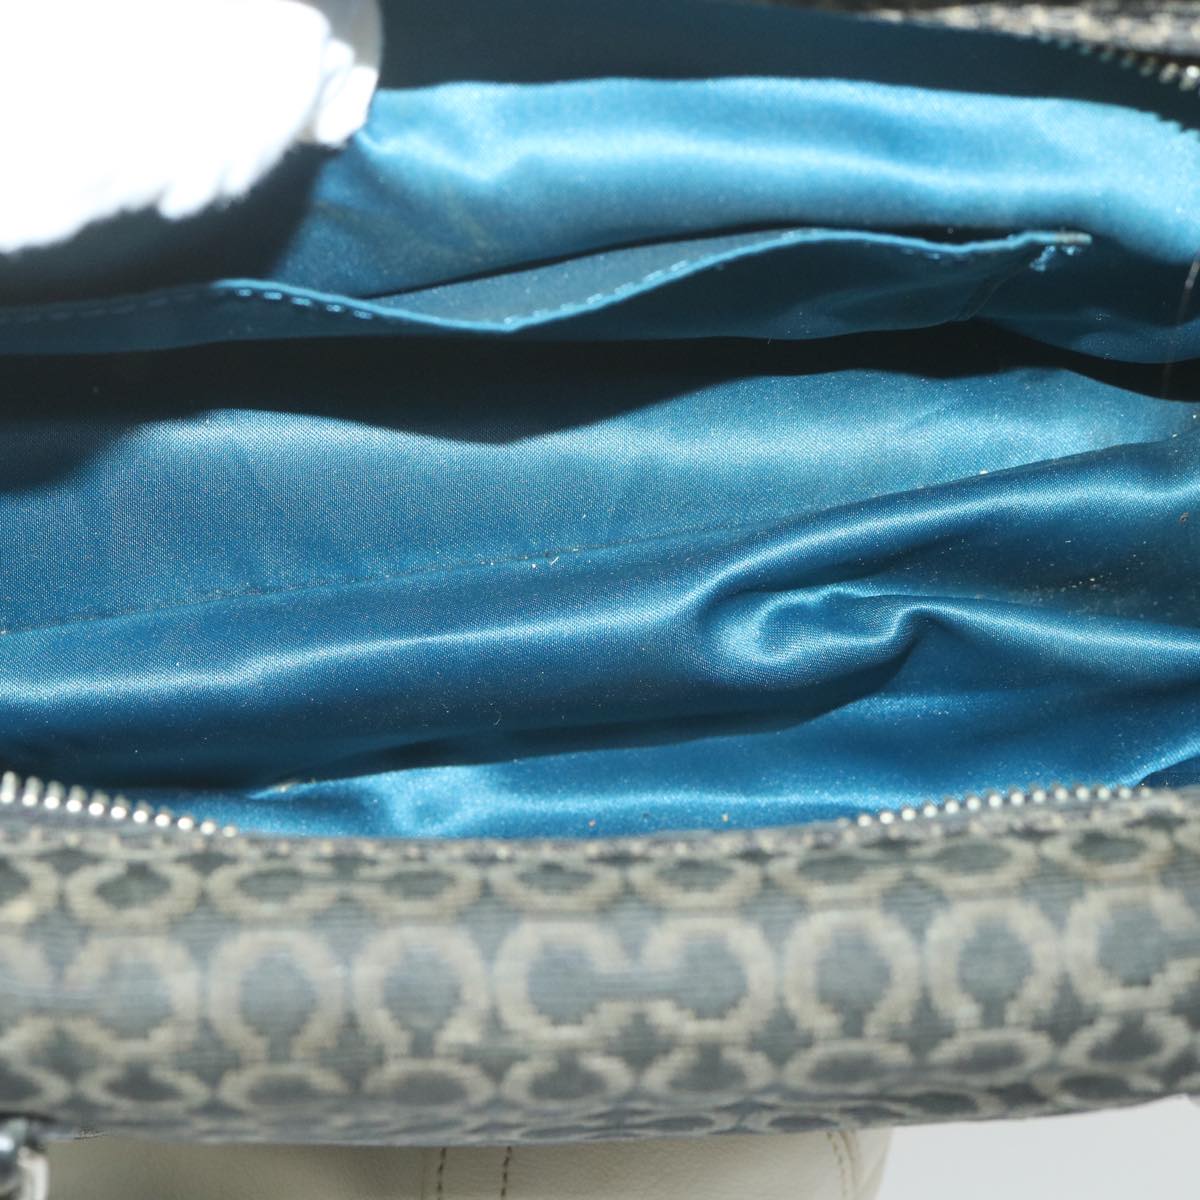 Coach Signature Shoulder Bag Canvas Leather 5Set Gray Black white Auth ar10801